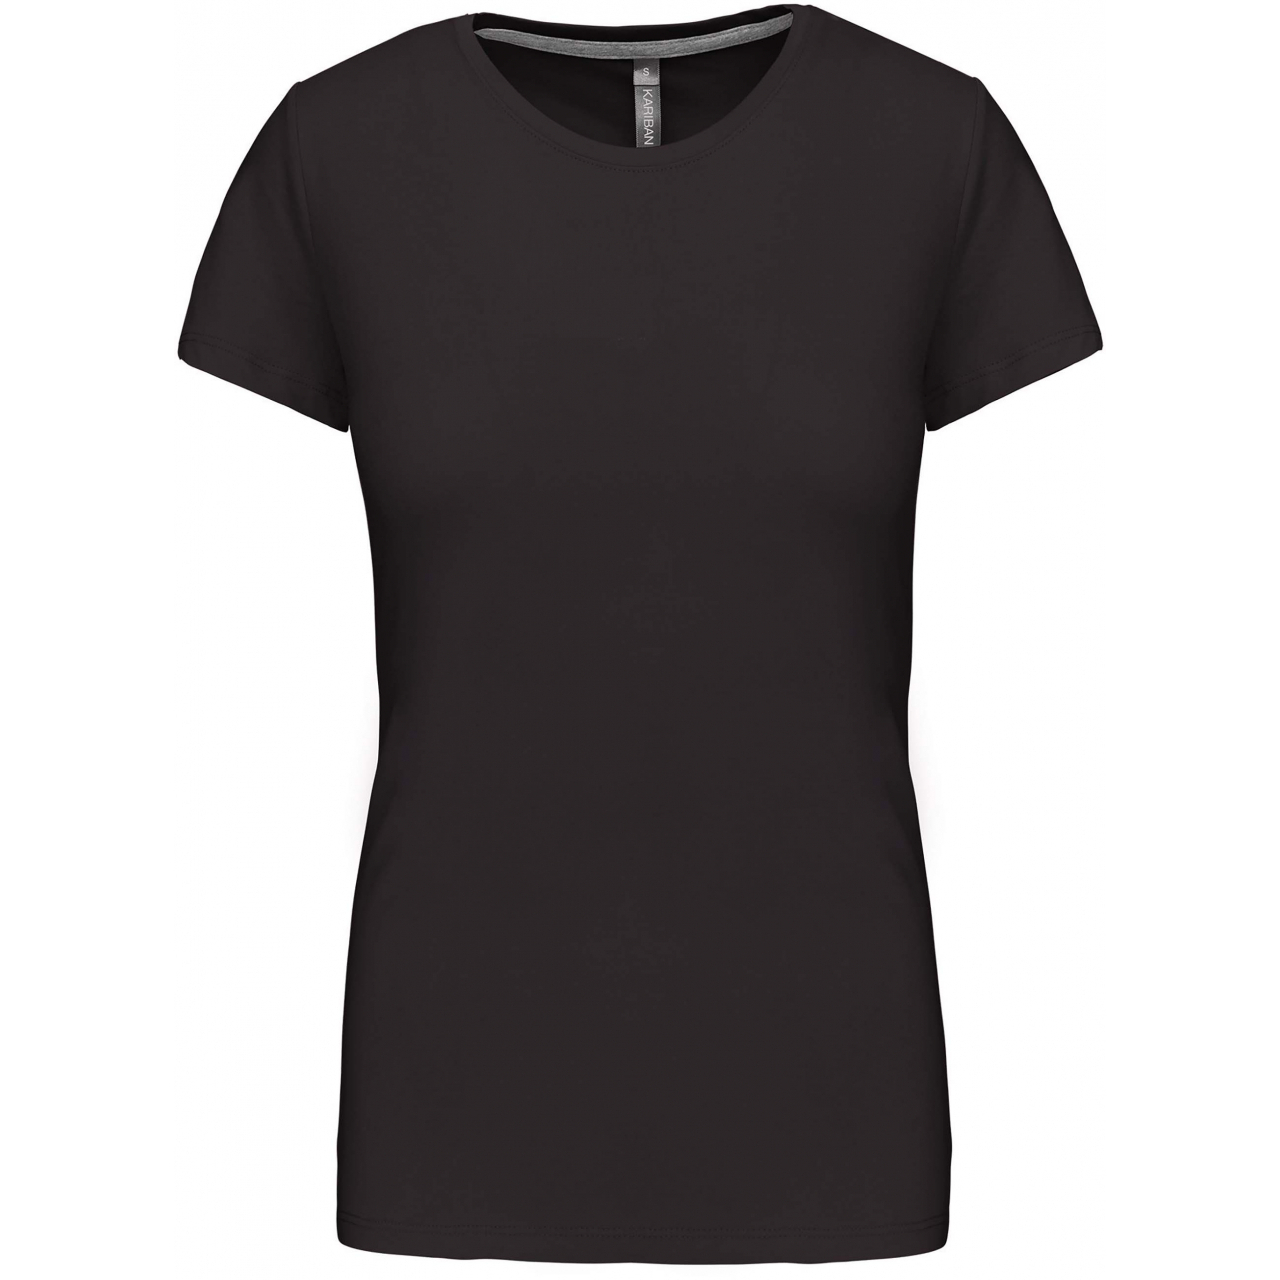 Dámské tričko Kariban s krátkým rukávem - tmavě šedé, 3XL